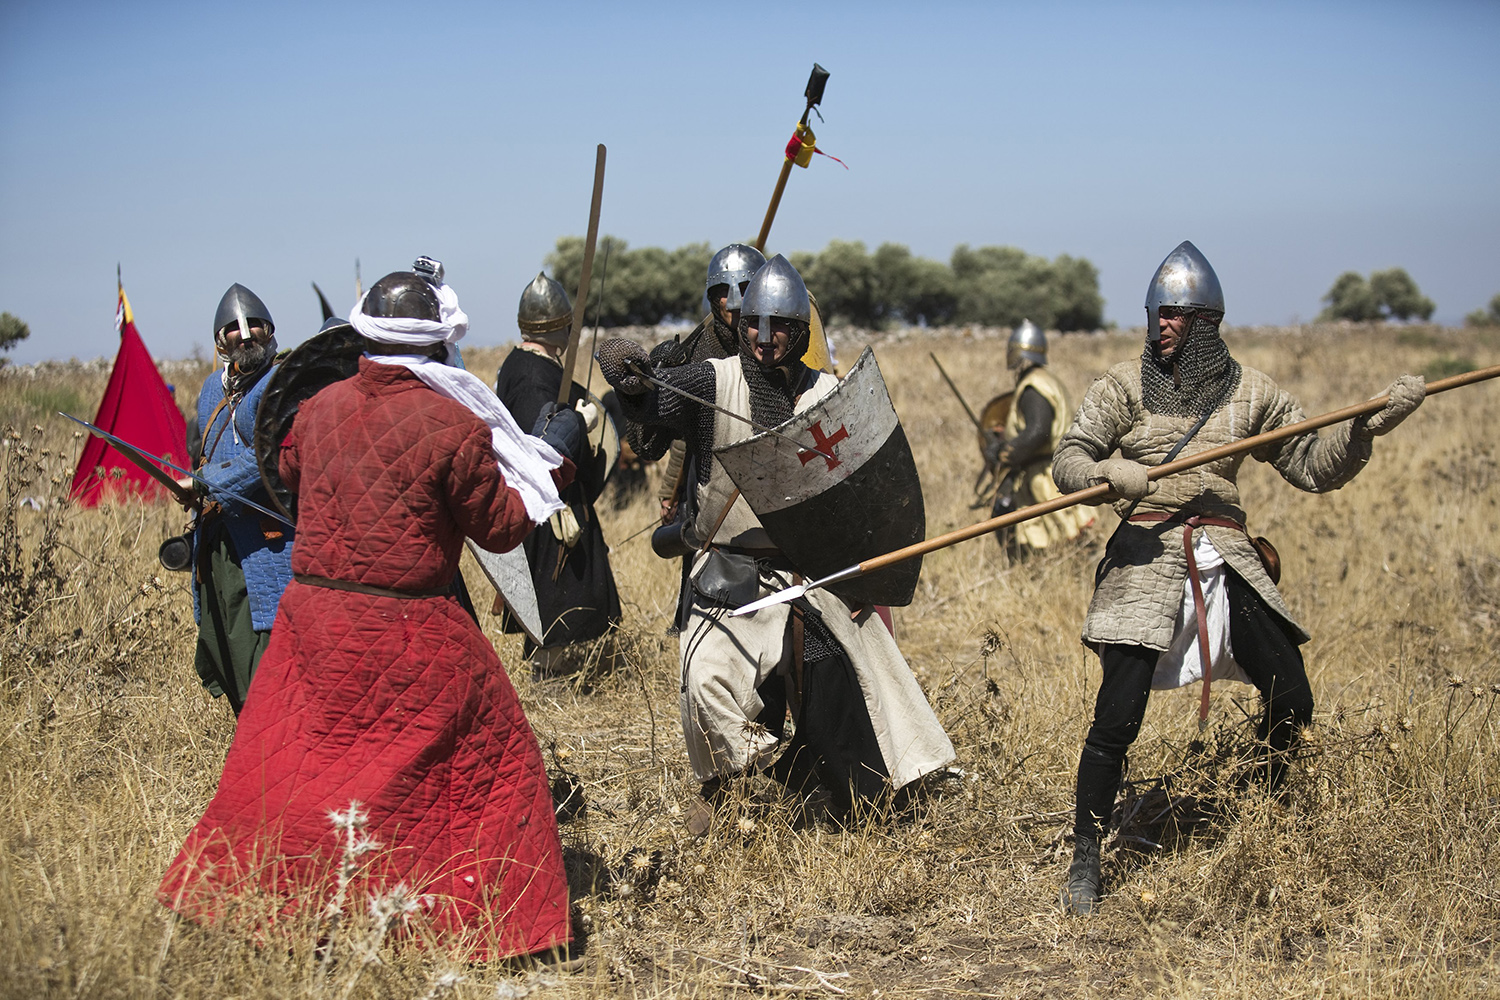 Los cruzados vuelven a batallar en la región de Galilea nueve siglos después